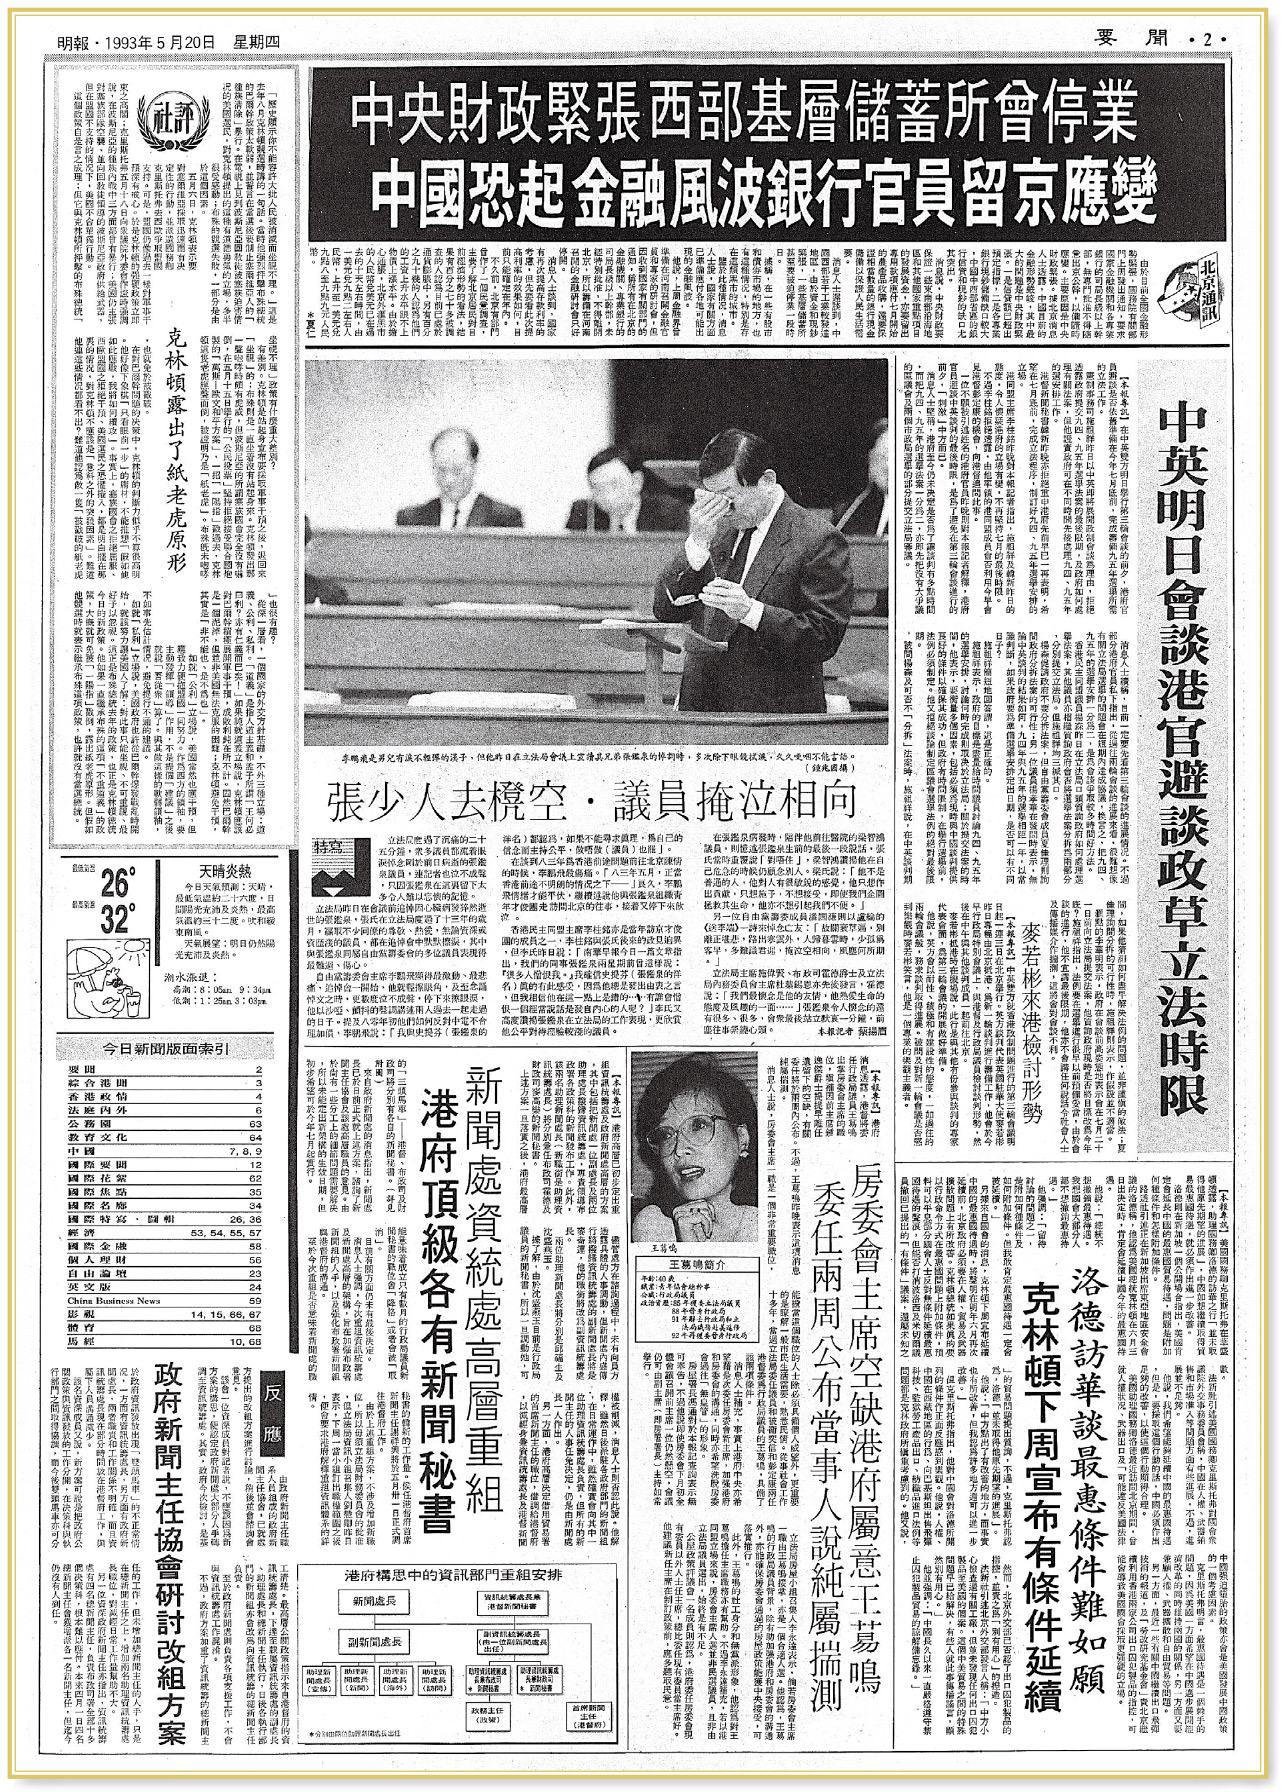 【日月掠影】1993年5月20日：中英會談 尋選舉制度共識